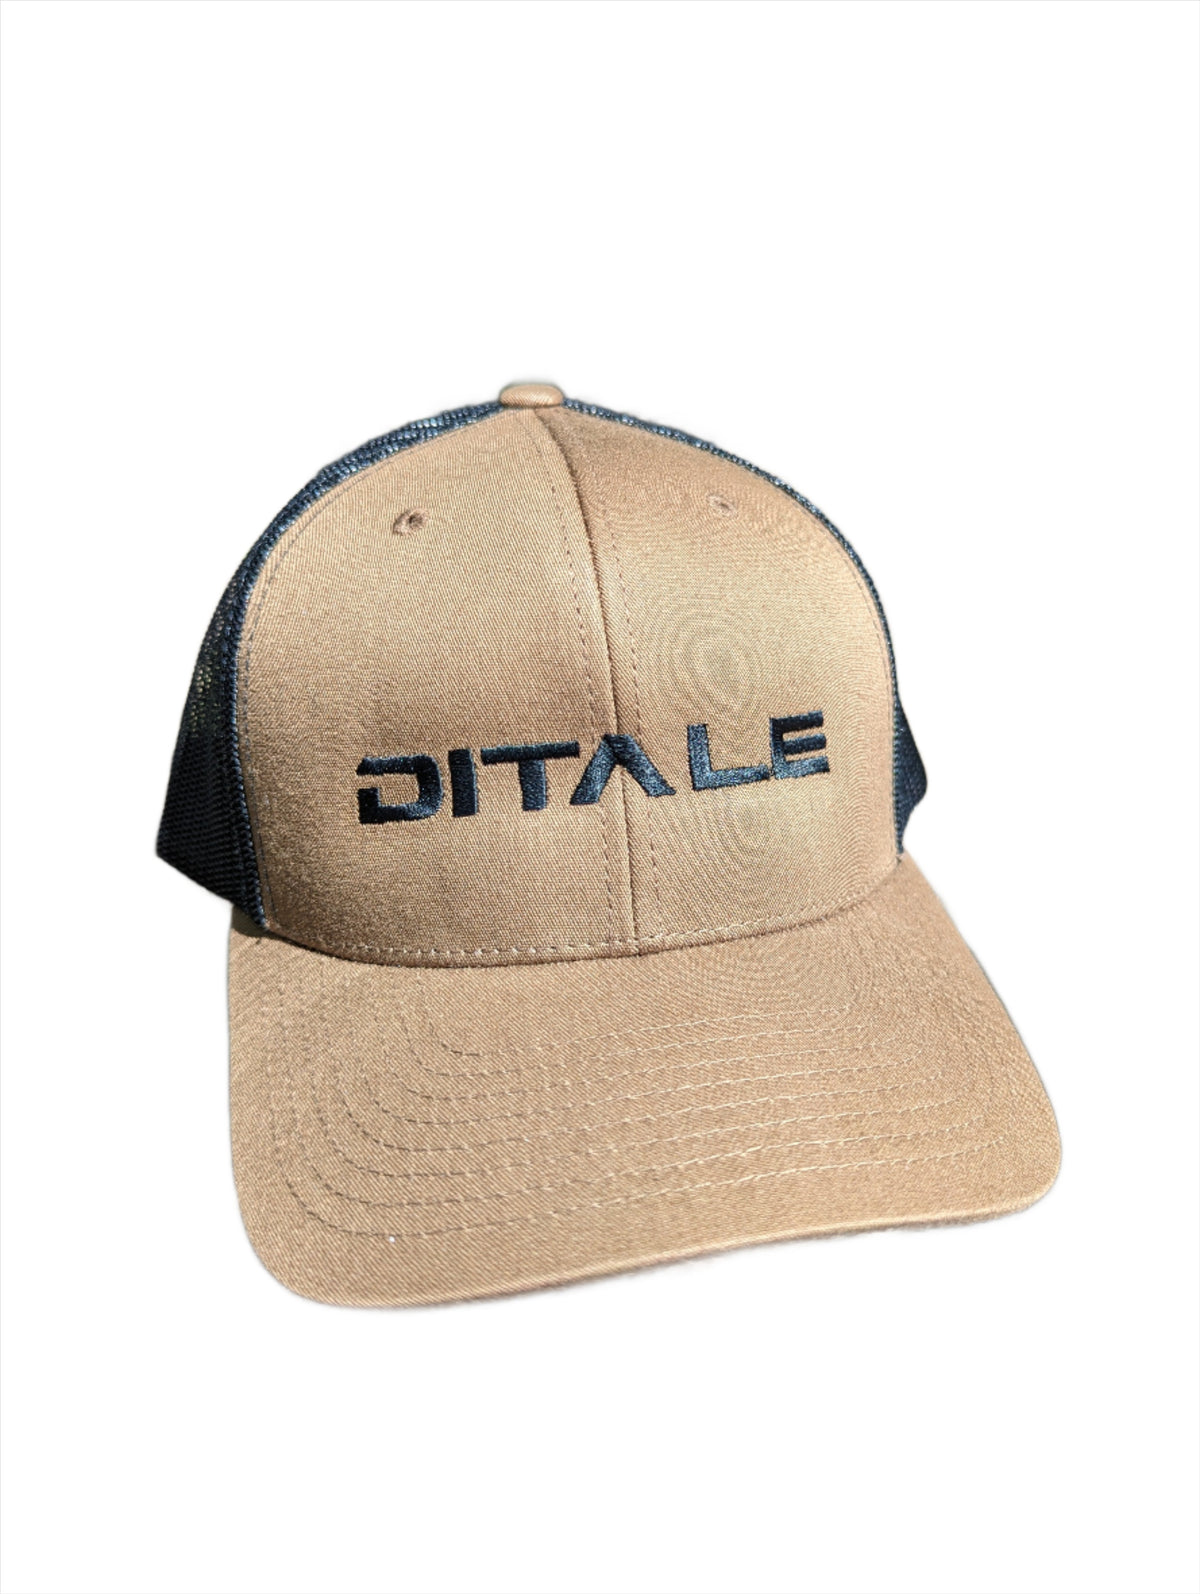 Coyote Tan Trucker Hat